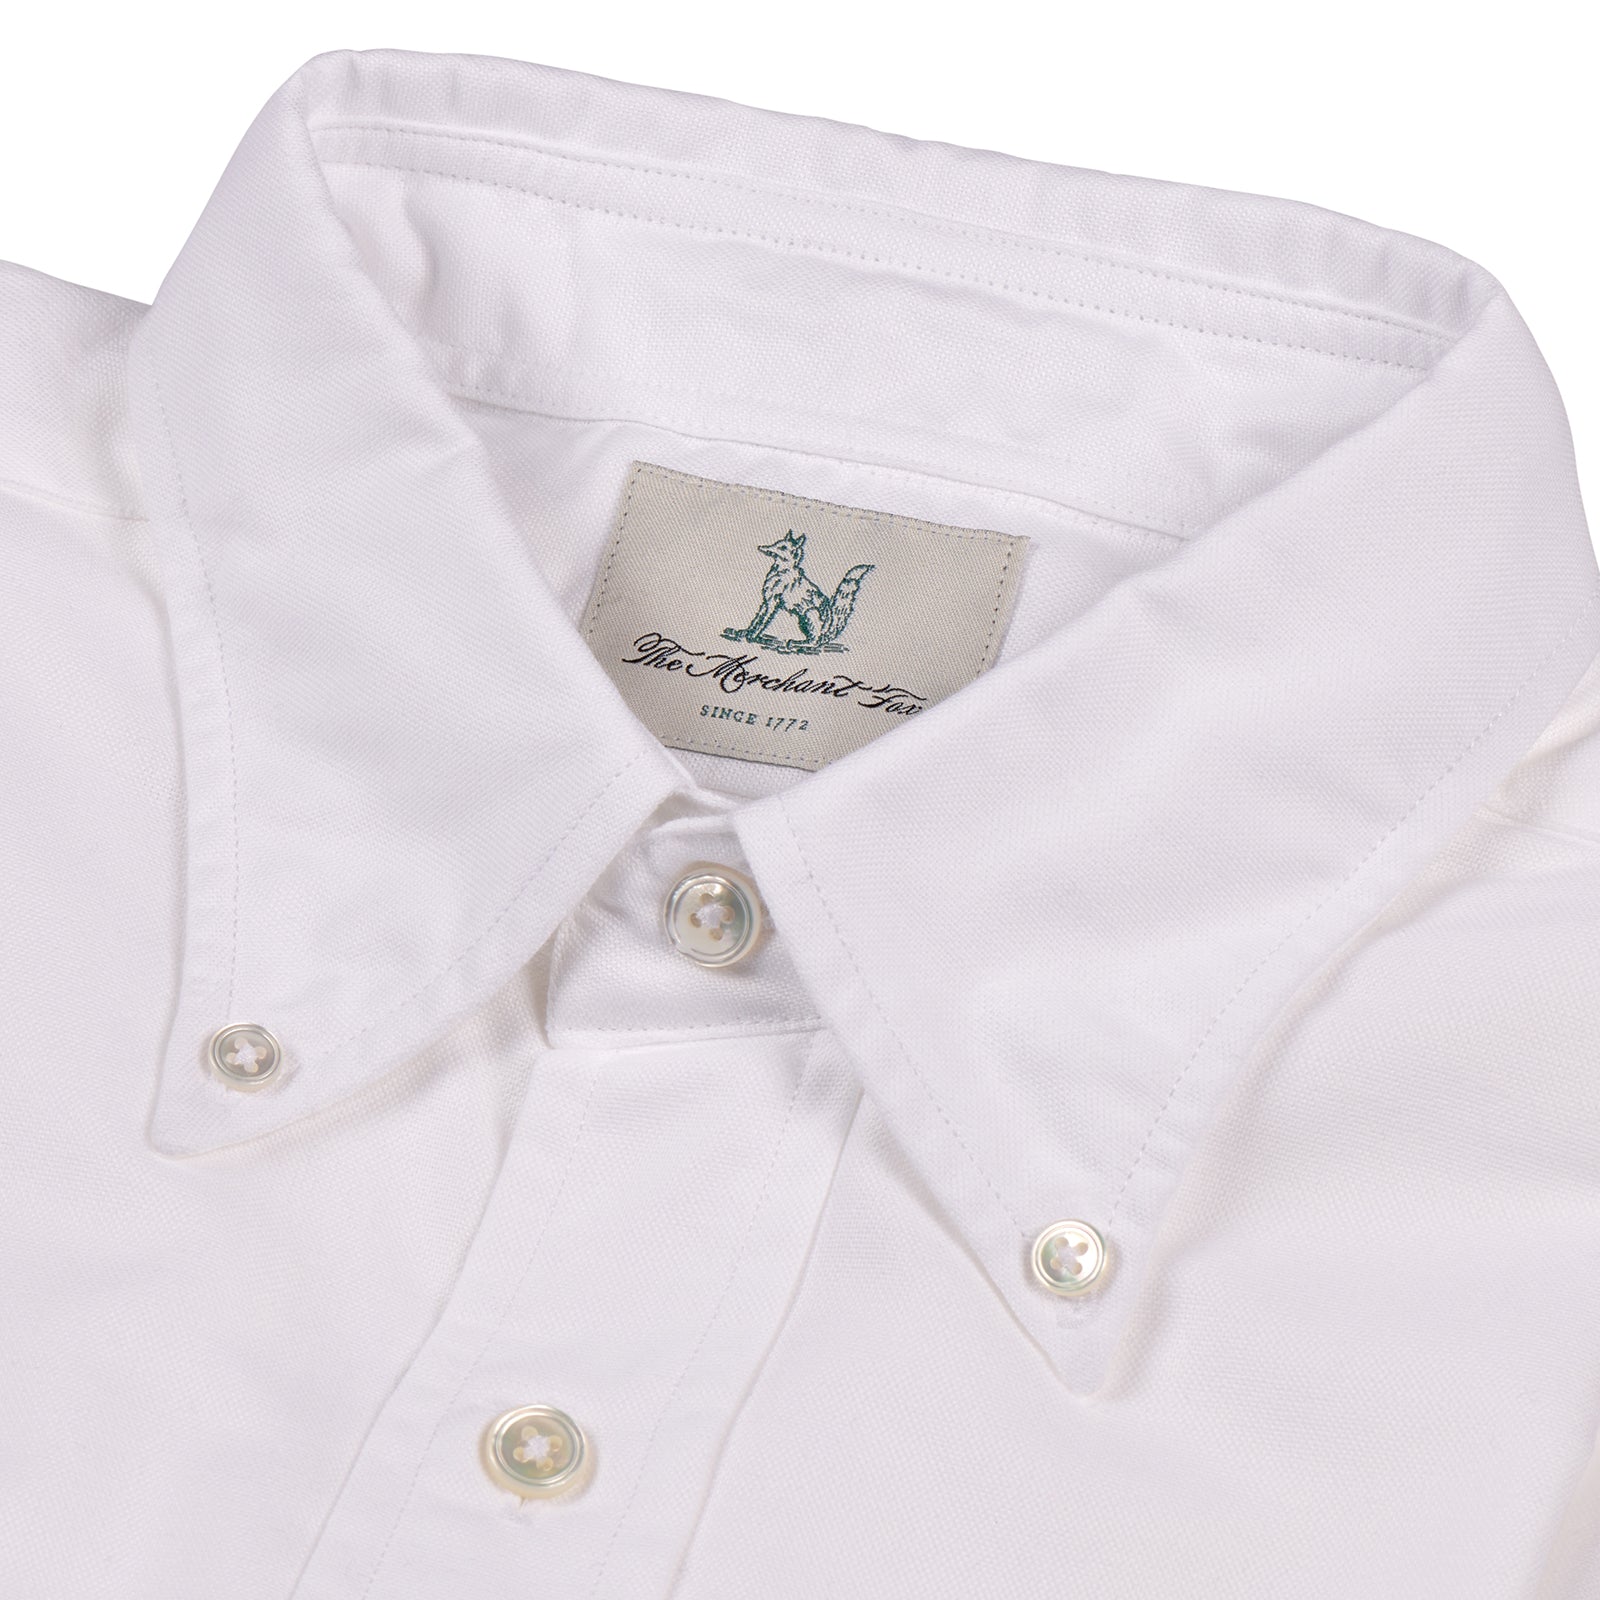 Fox Oxford White Button-Down Casual Shirt